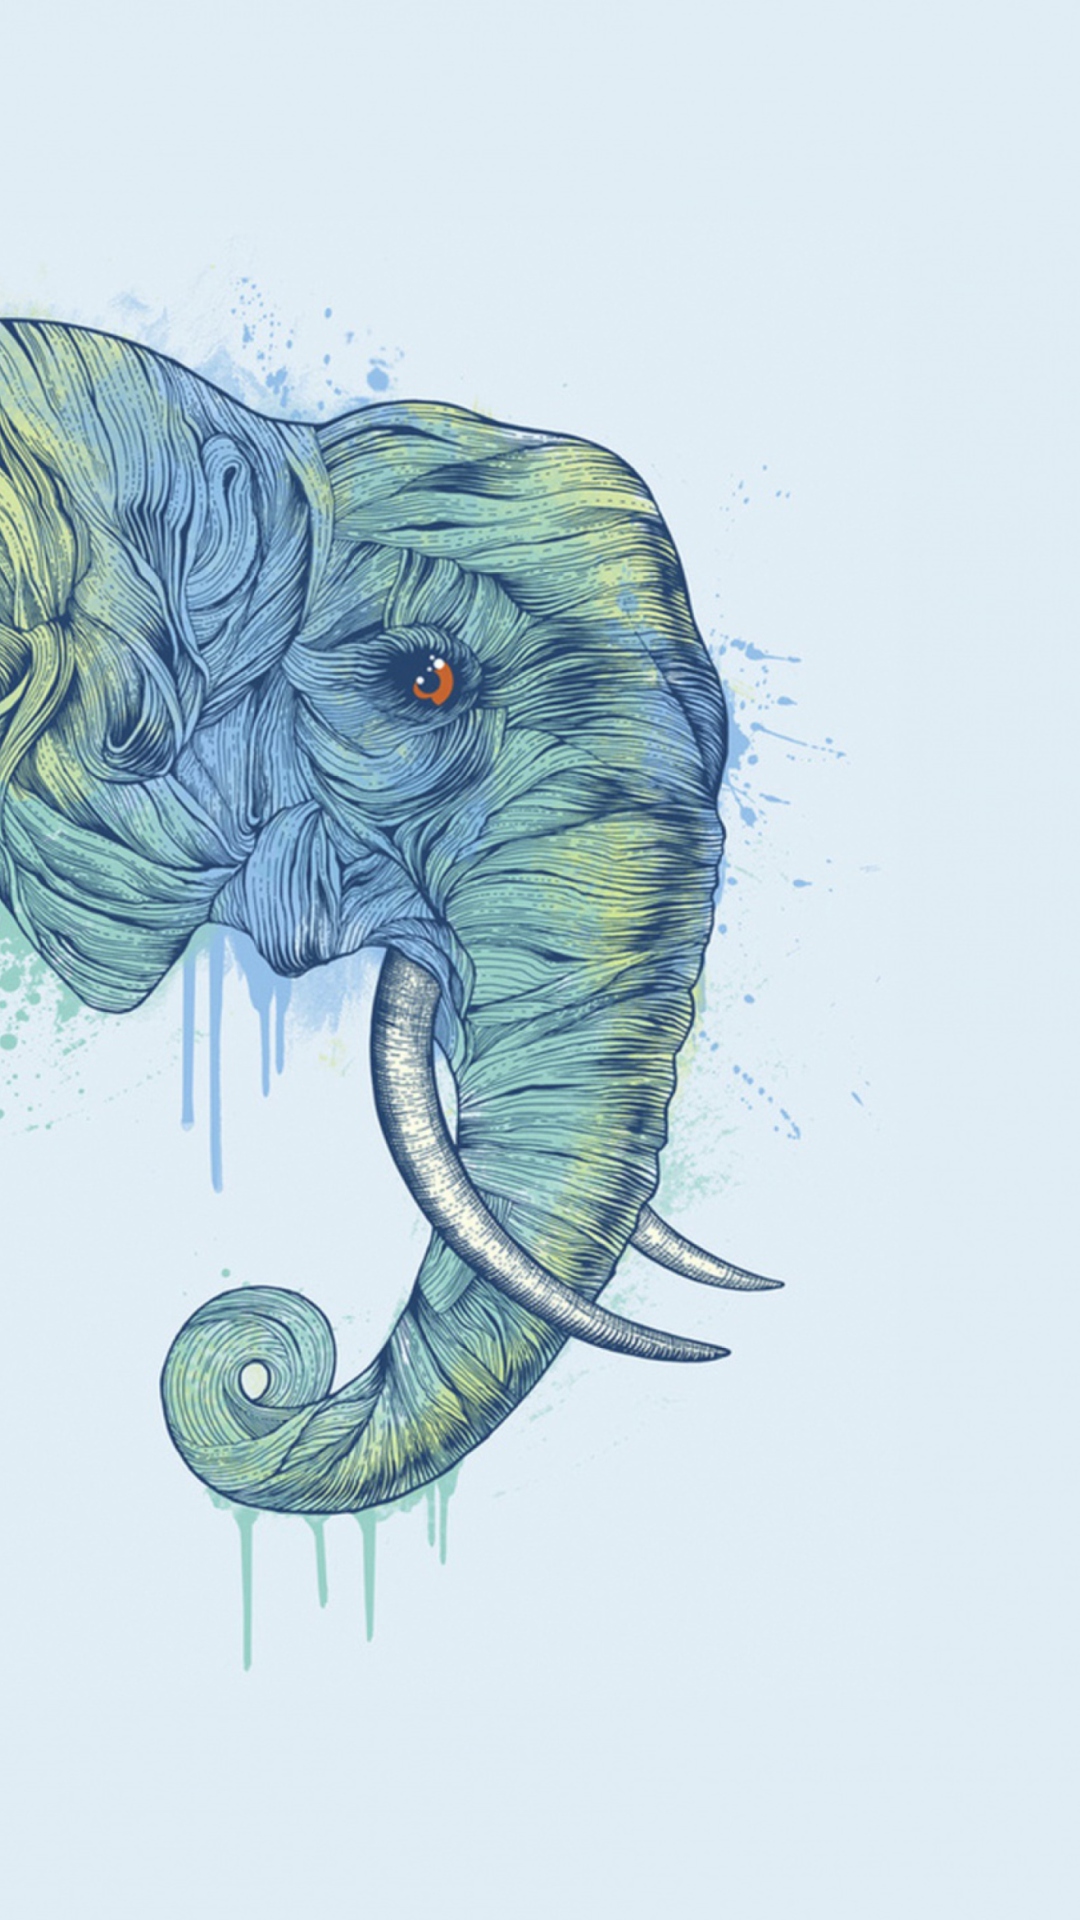 Elephan Head wallpaper 1080x1920